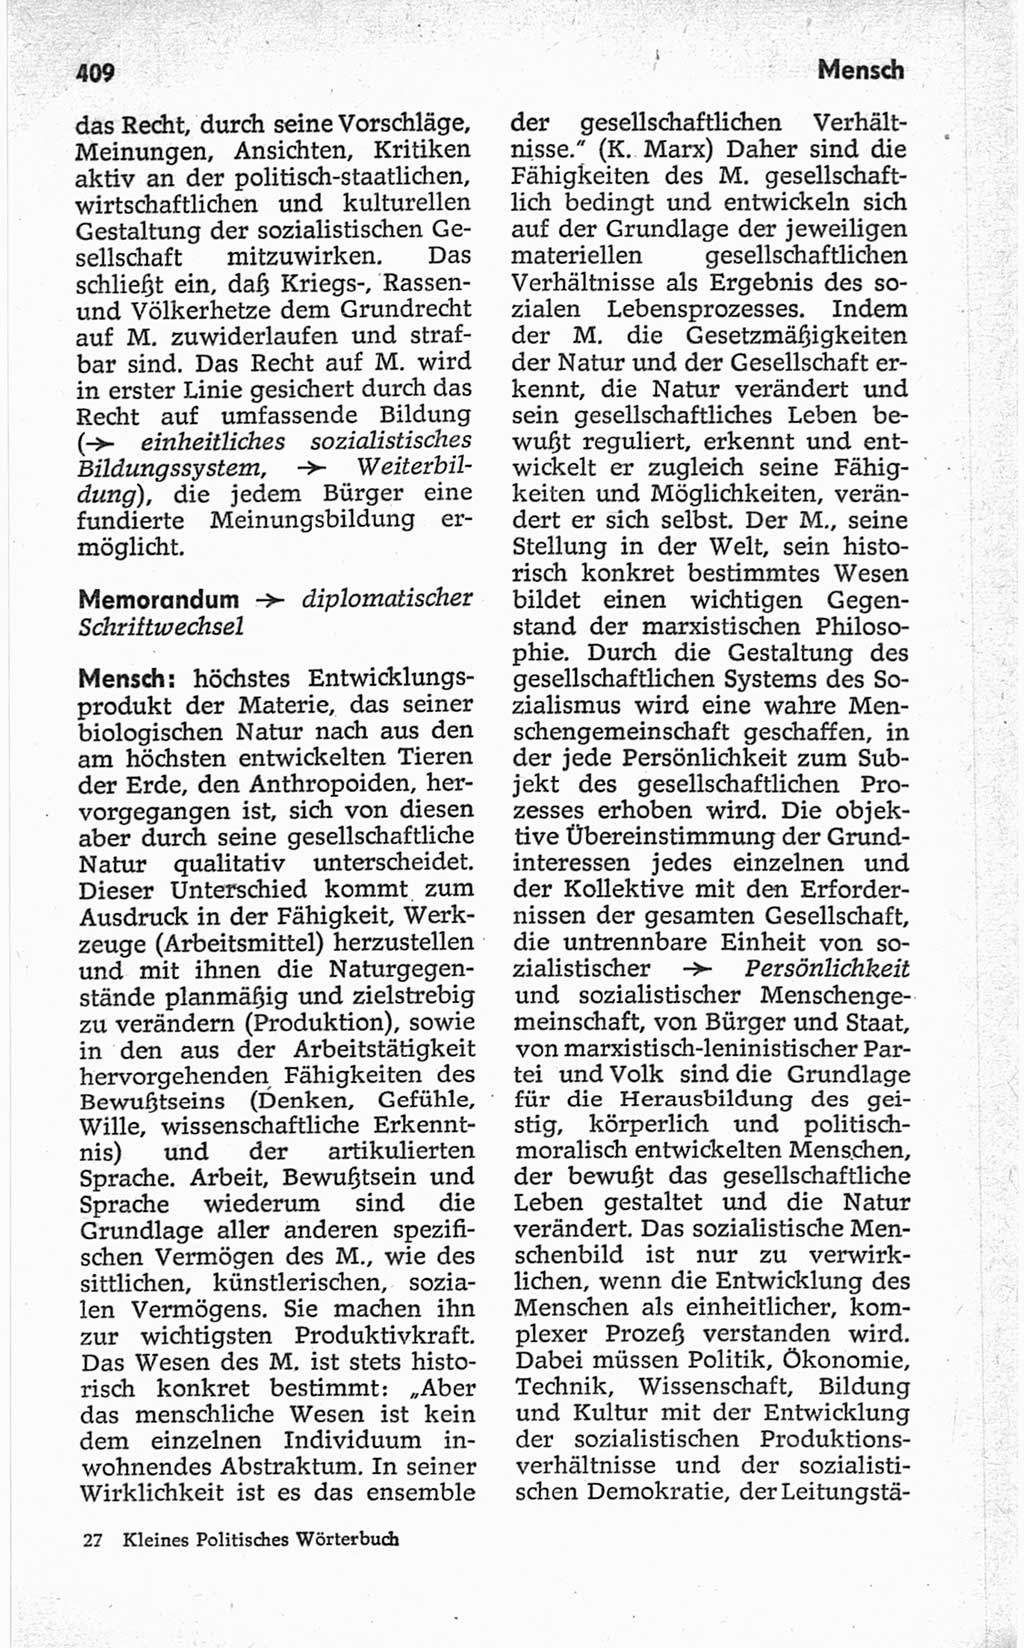 Kleines politisches Wörterbuch [Deutsche Demokratische Republik (DDR)] 1967, Seite 409 (Kl. pol. Wb. DDR 1967, S. 409)